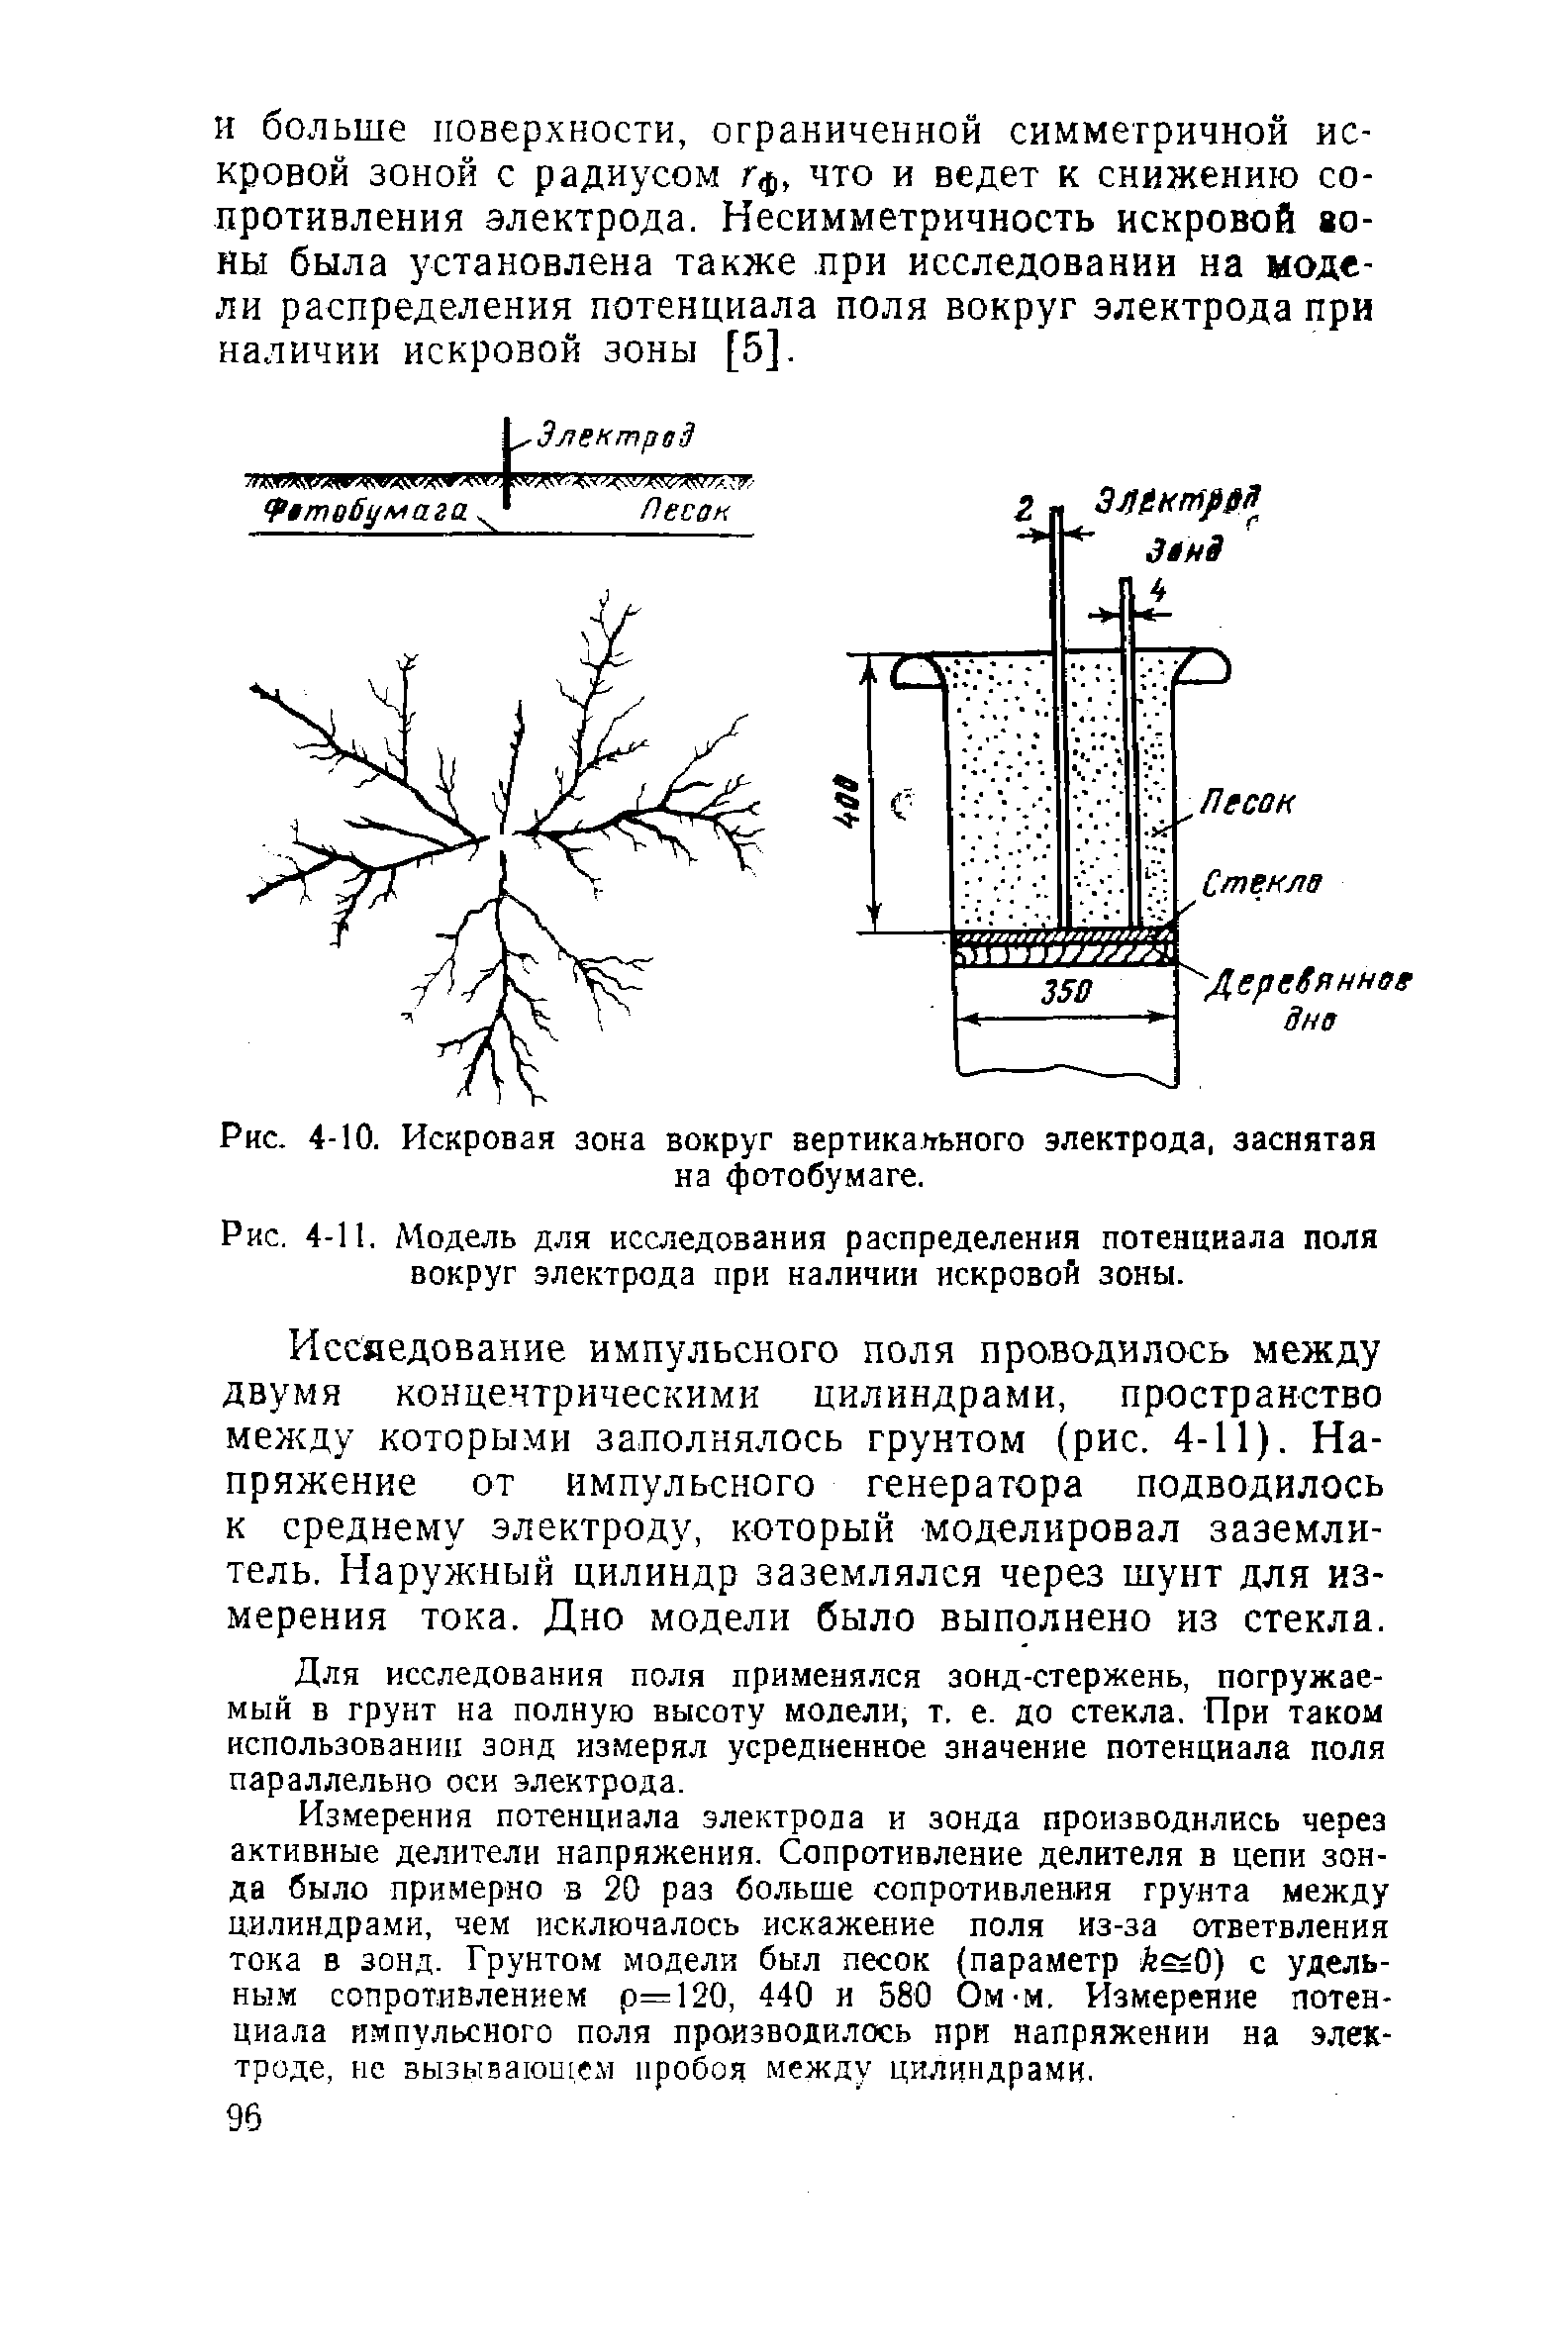 Рис. 4-11. Модель для исследования распределения <a href="/info/19467">потенциала поля</a> вокруг электрода при наличии искровой зоны.
